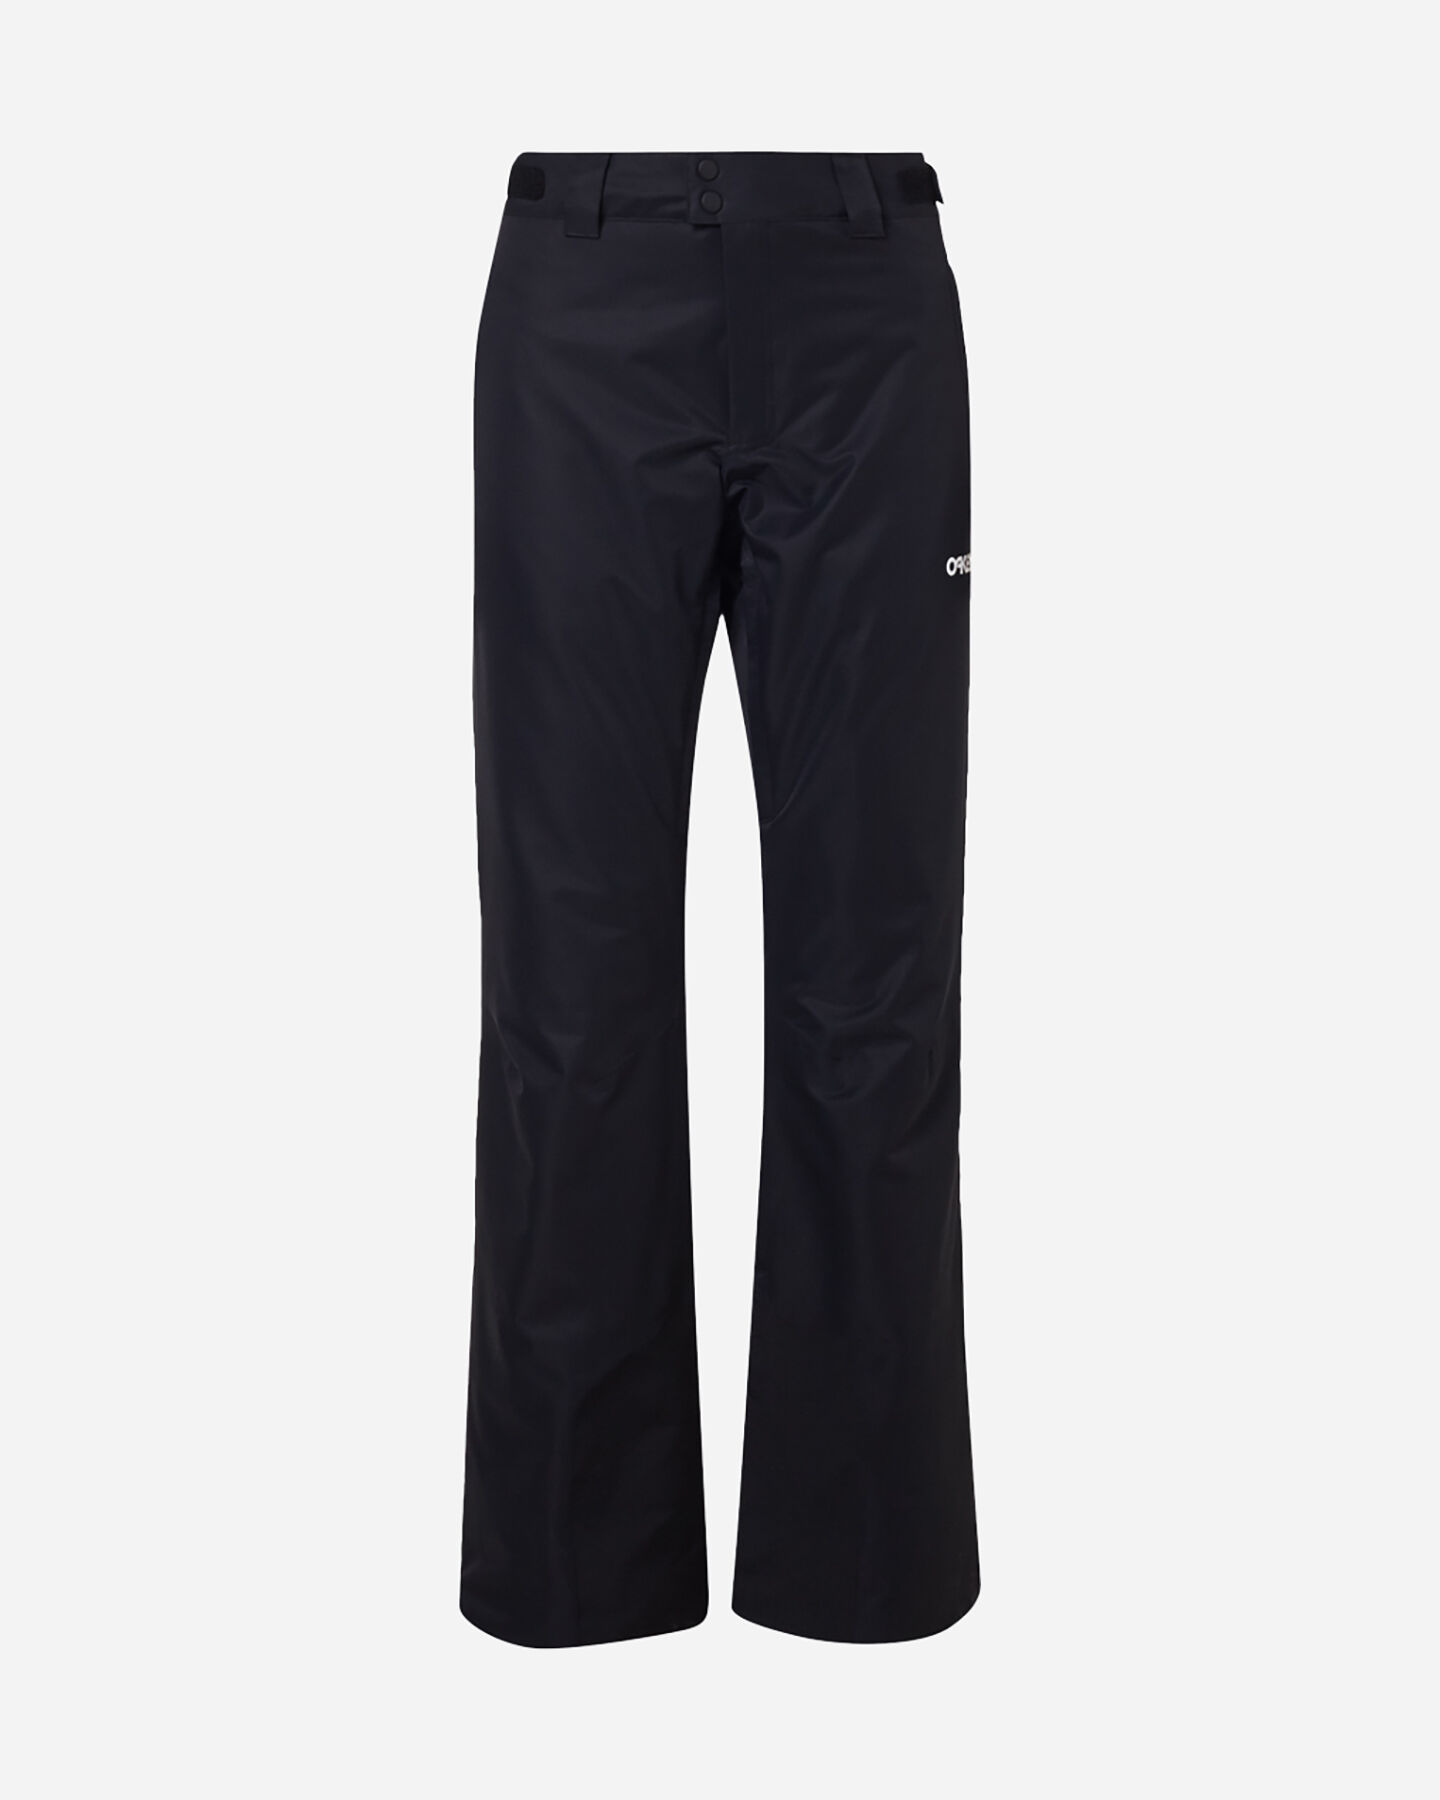  Pantalone sci OAKLEY JASMINE INSULATED W S4117521|02E|L scatto 0